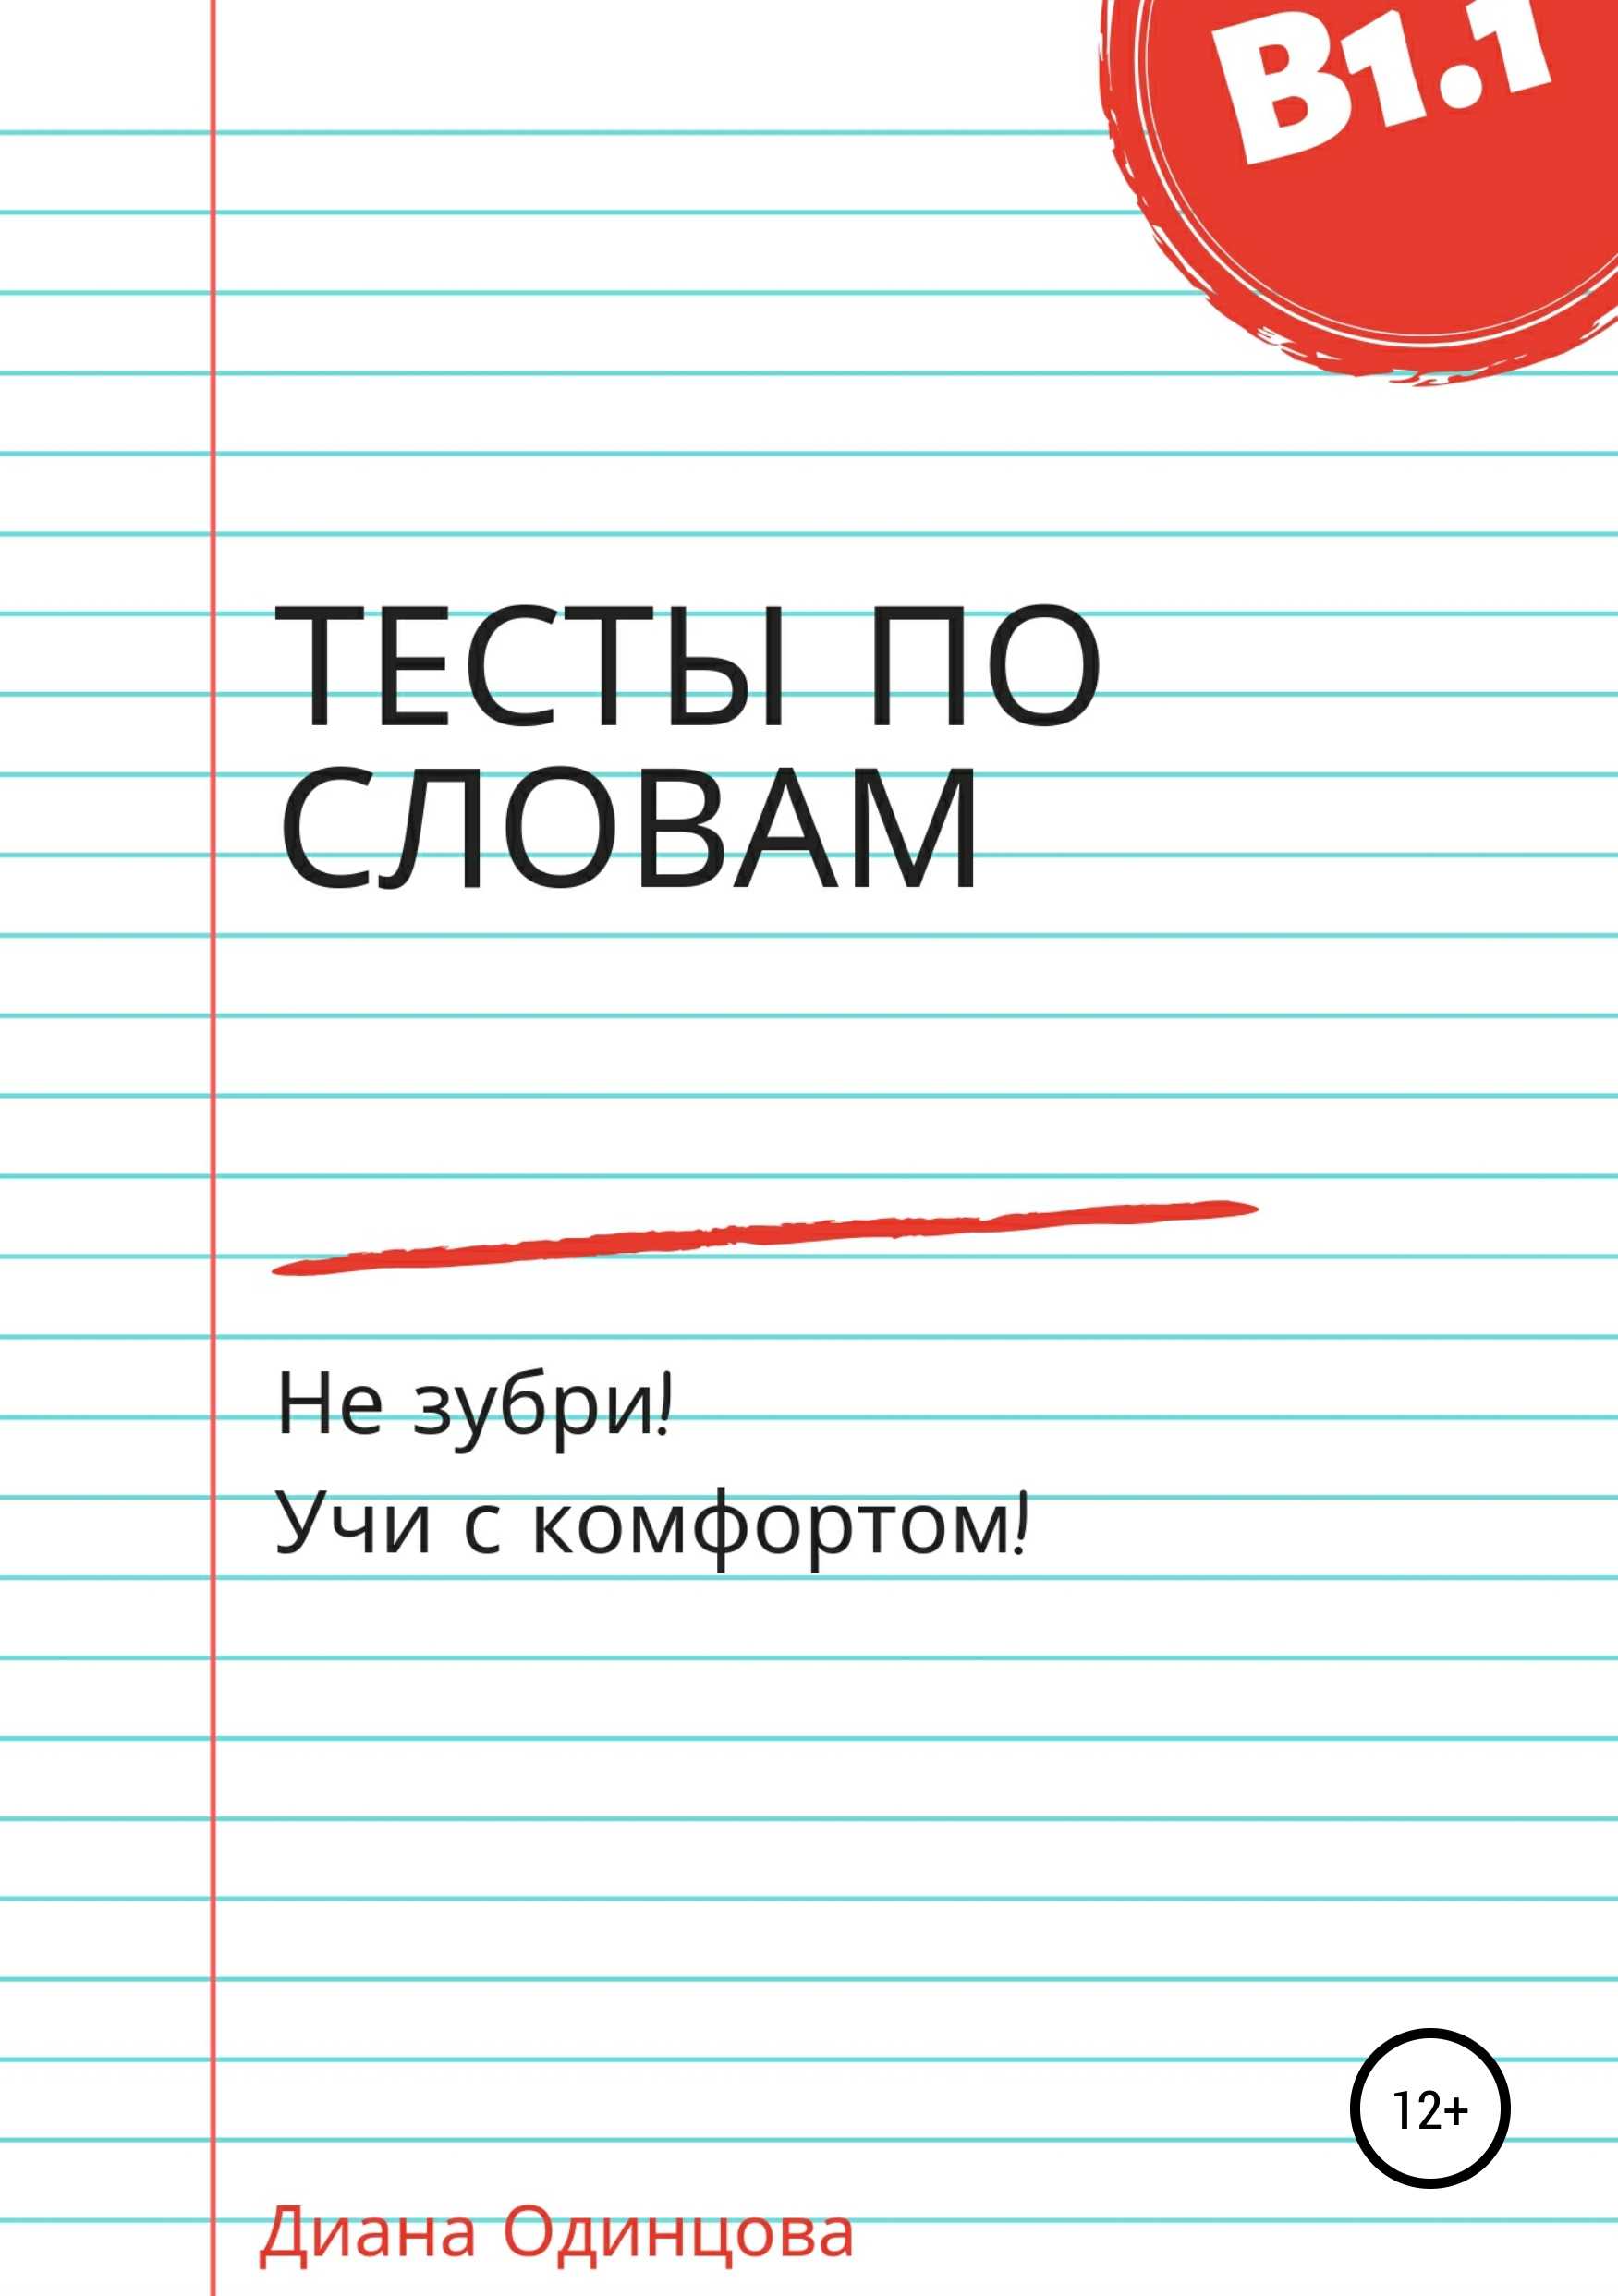 Книга Тесты по словам для уровня В1.1 из серии , созданная Диана Одинцова, может относится к жанру Иностранные языки, Педагогика, Учебная литература. Стоимость электронной книги Тесты по словам для уровня В1.1 с идентификатором 42580342 составляет 149.00 руб.